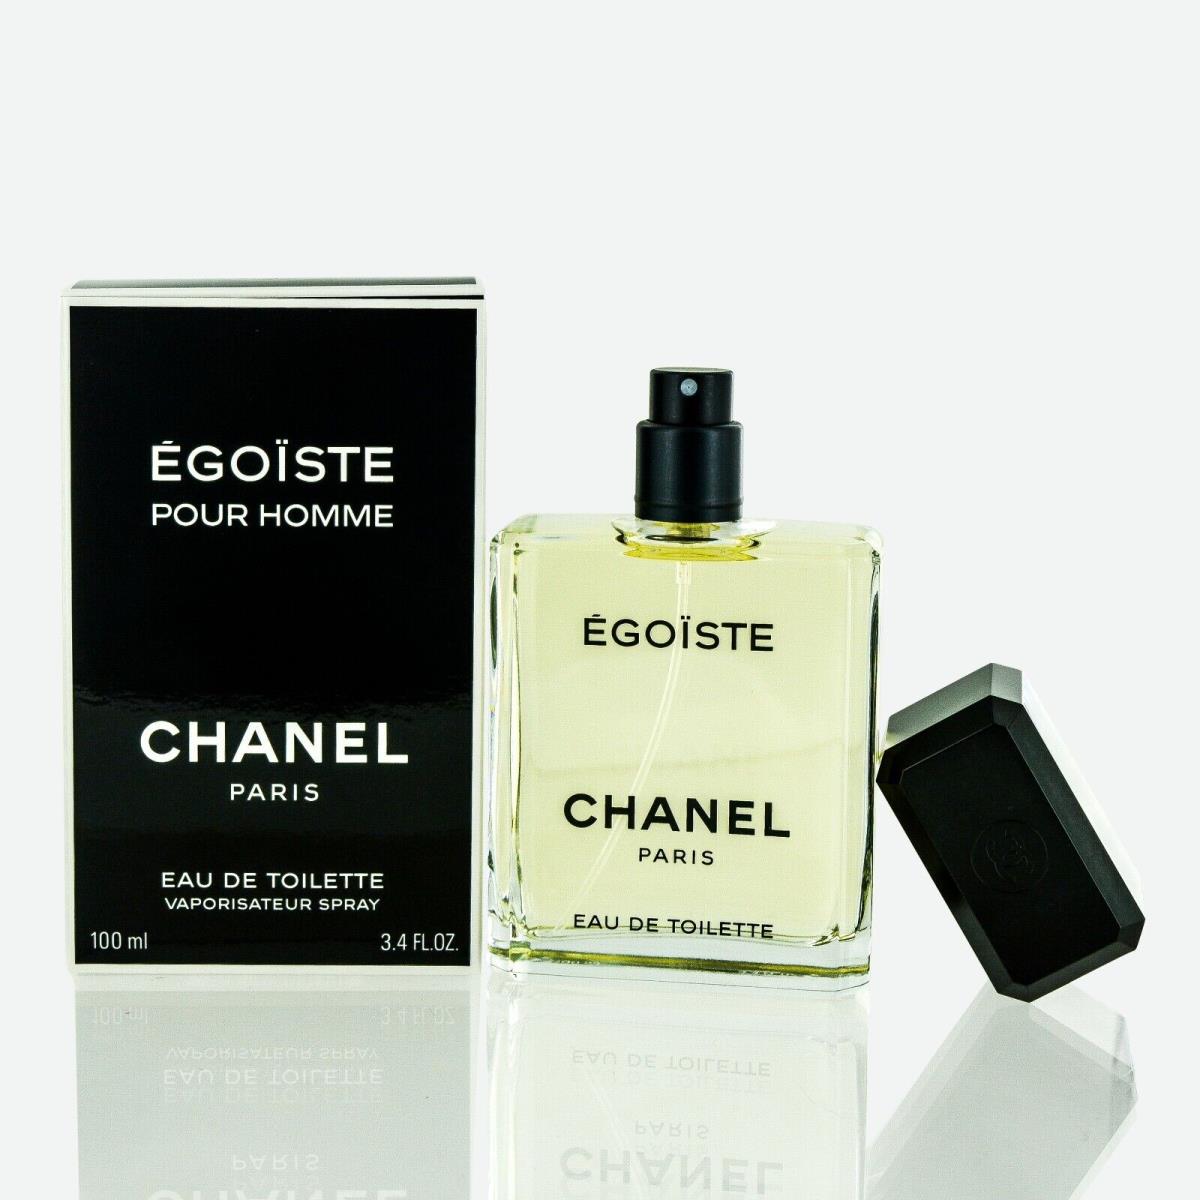 Chanel Egoiste Pour Homme 3.4 fl oz Mens Eau de Toilette Spray